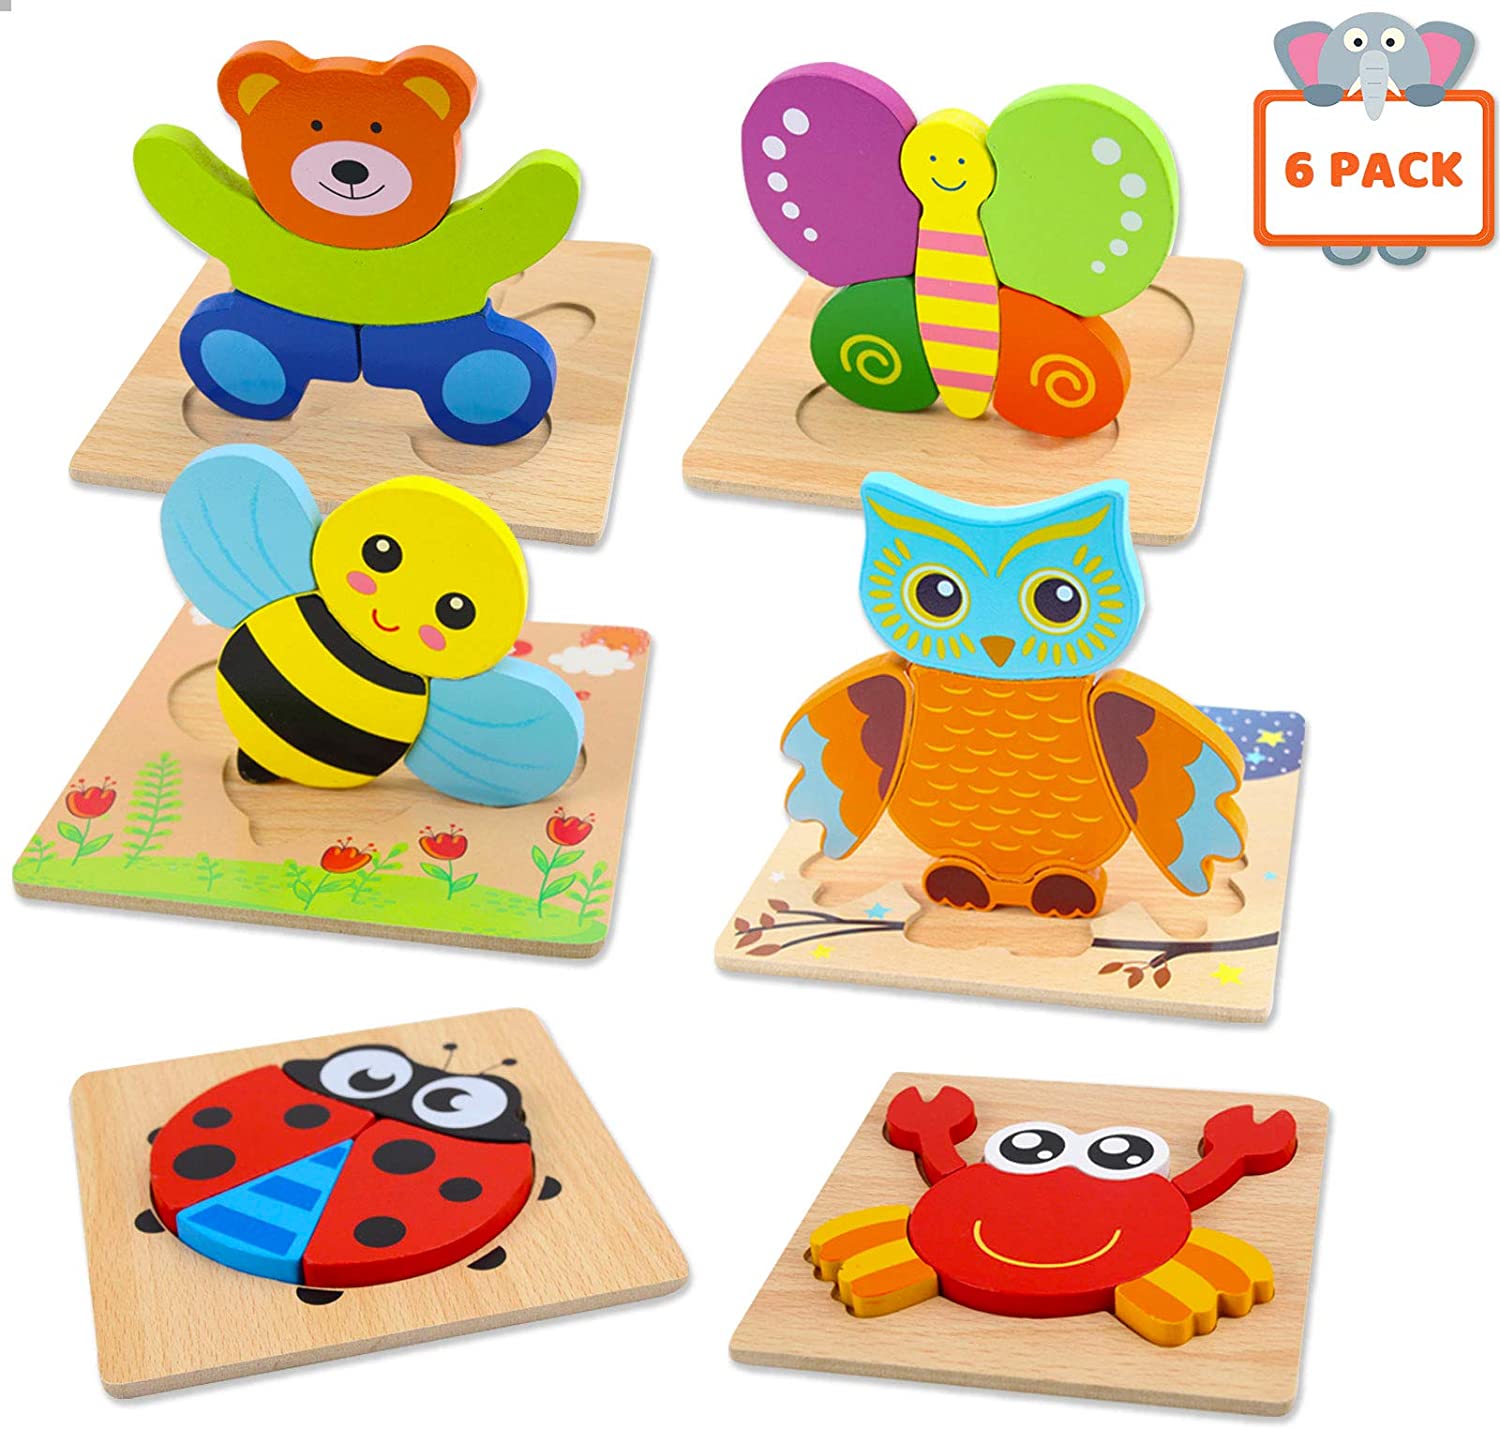 Bestseller: Montessori houten puzzels van 6 stukjes